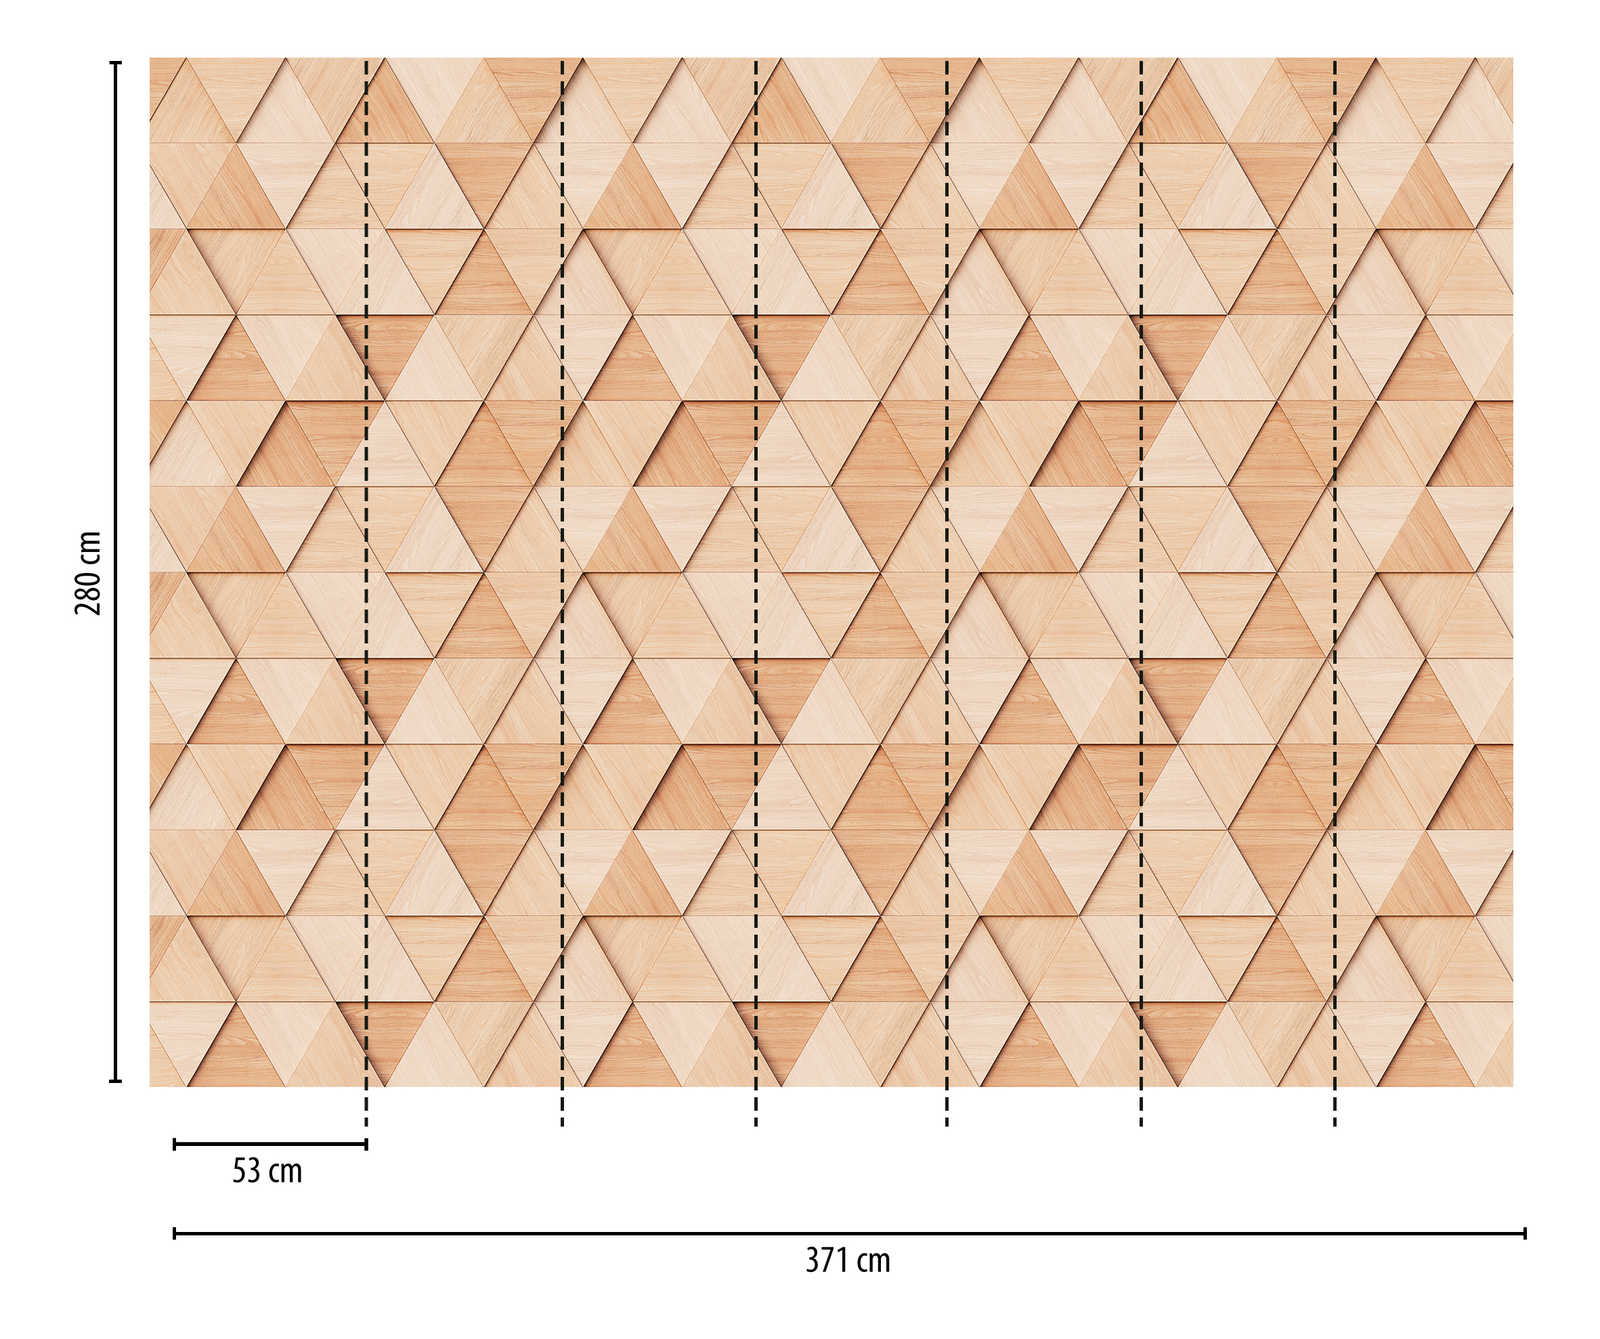             Papel pintado novedad - papel pintado con motivo de diseño de madera con patrón de triángulos en 3D
        